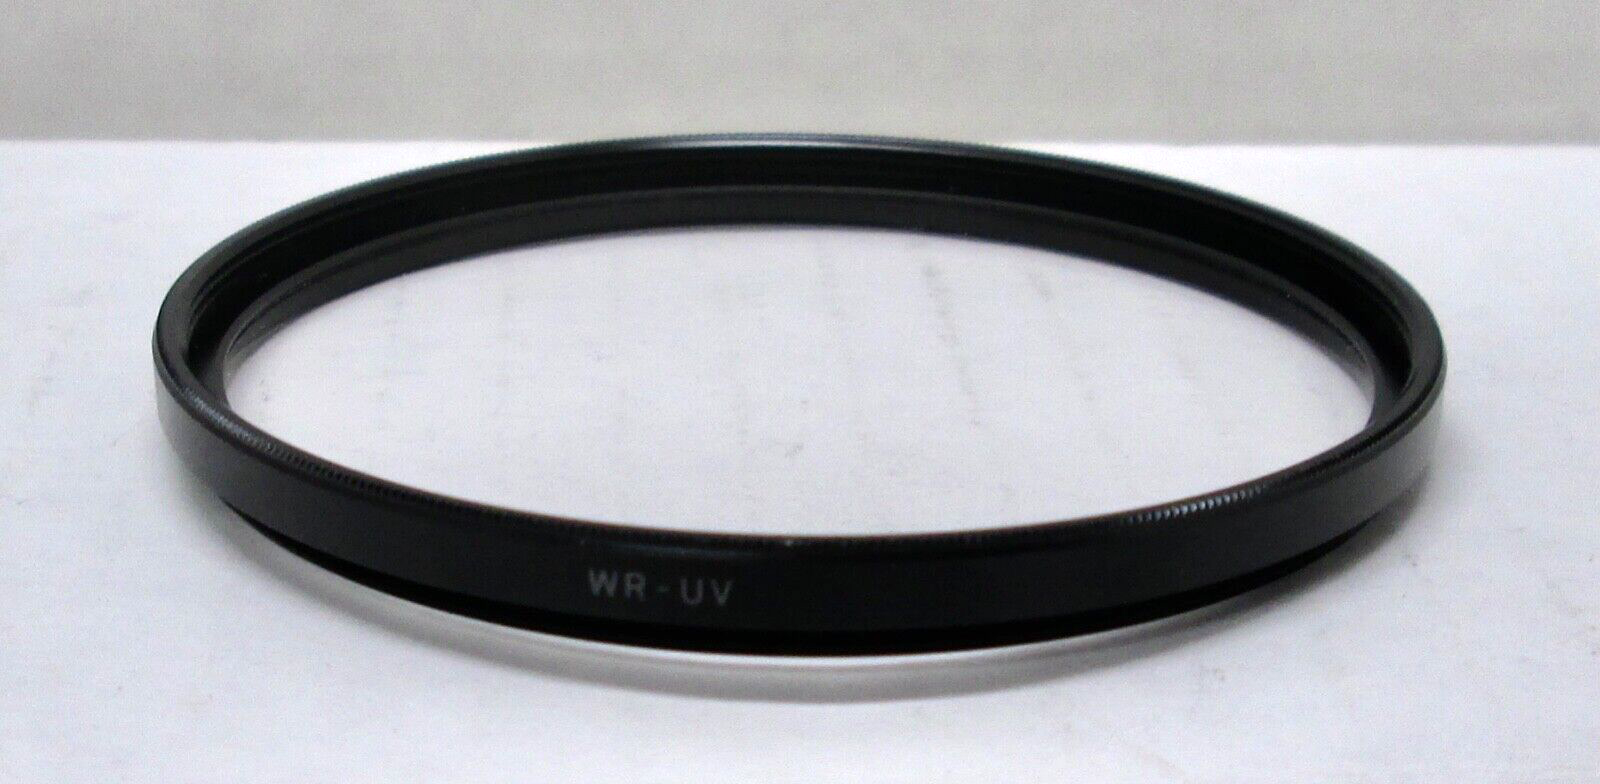 Genuine Sigma Japan 67mm WR Ultraviolet Filter - $9.49